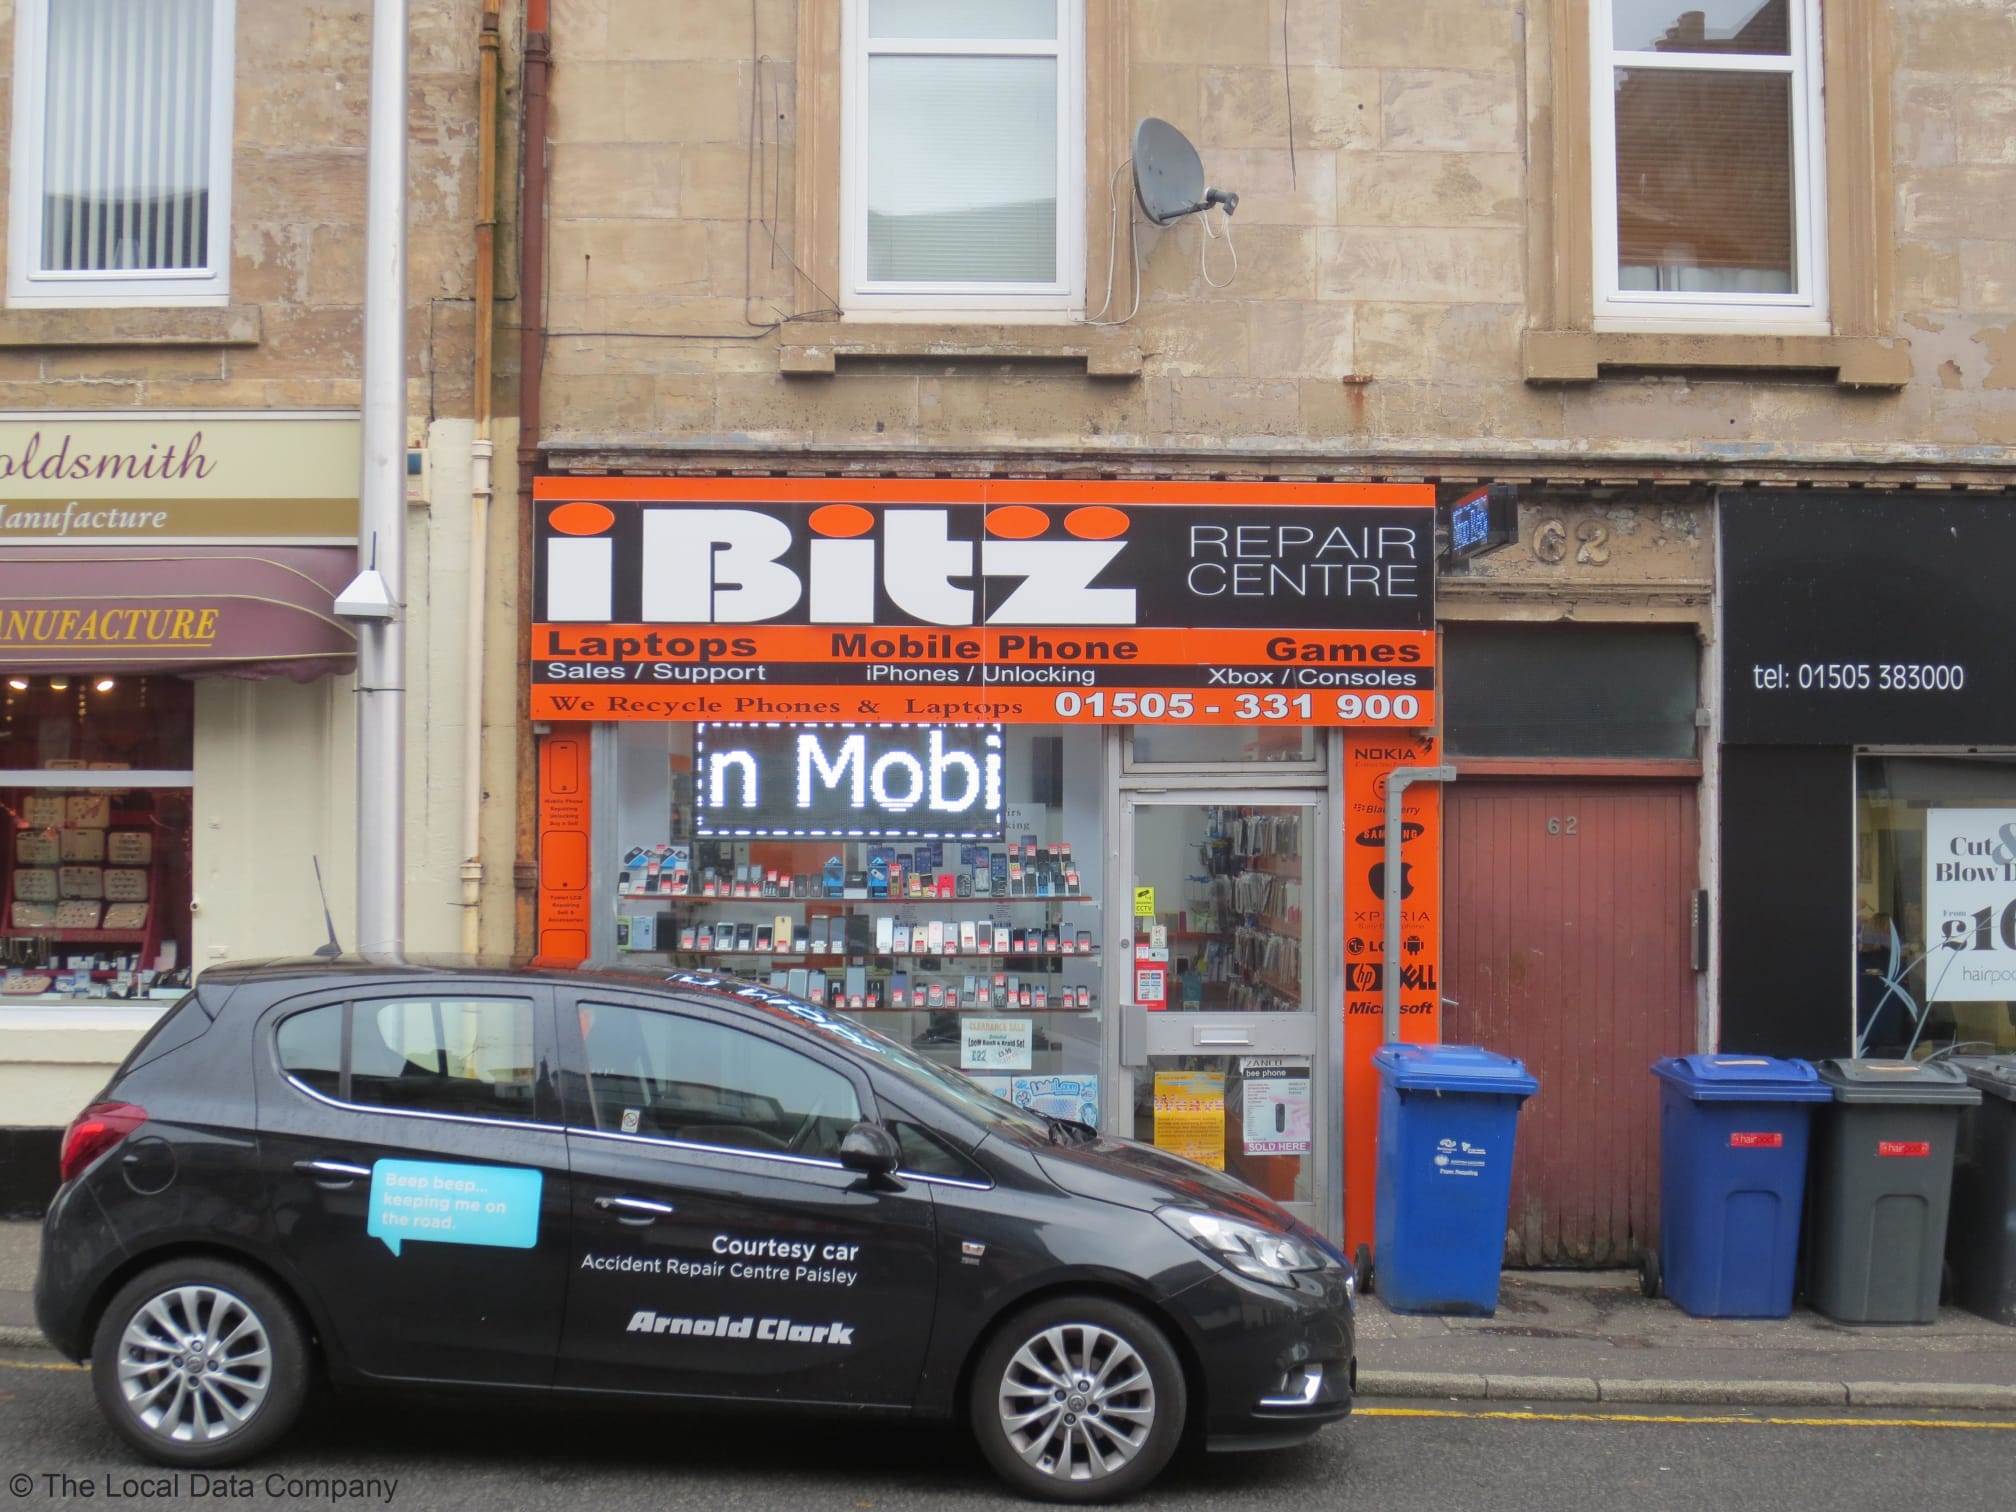 Images iBitz Phone & Laptop Repair Centre